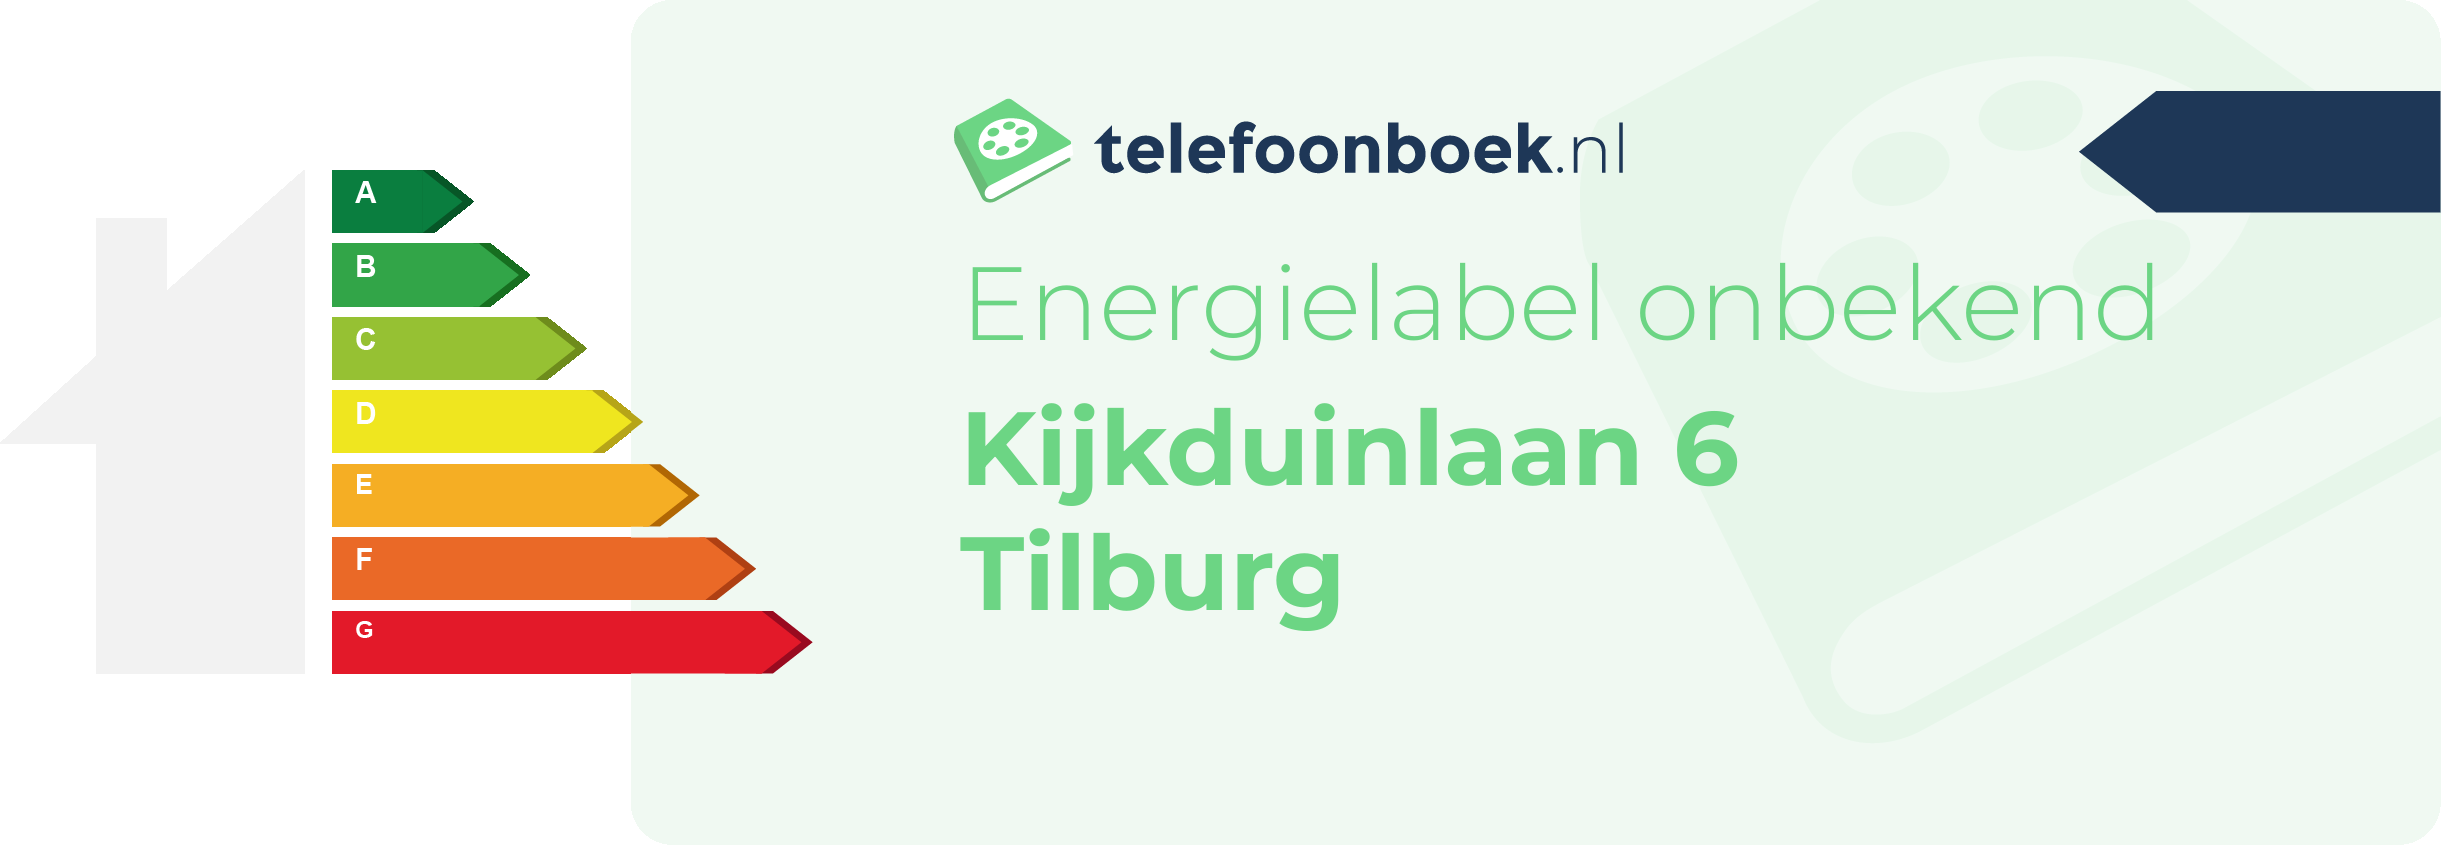 Energielabel Kijkduinlaan 6 Tilburg